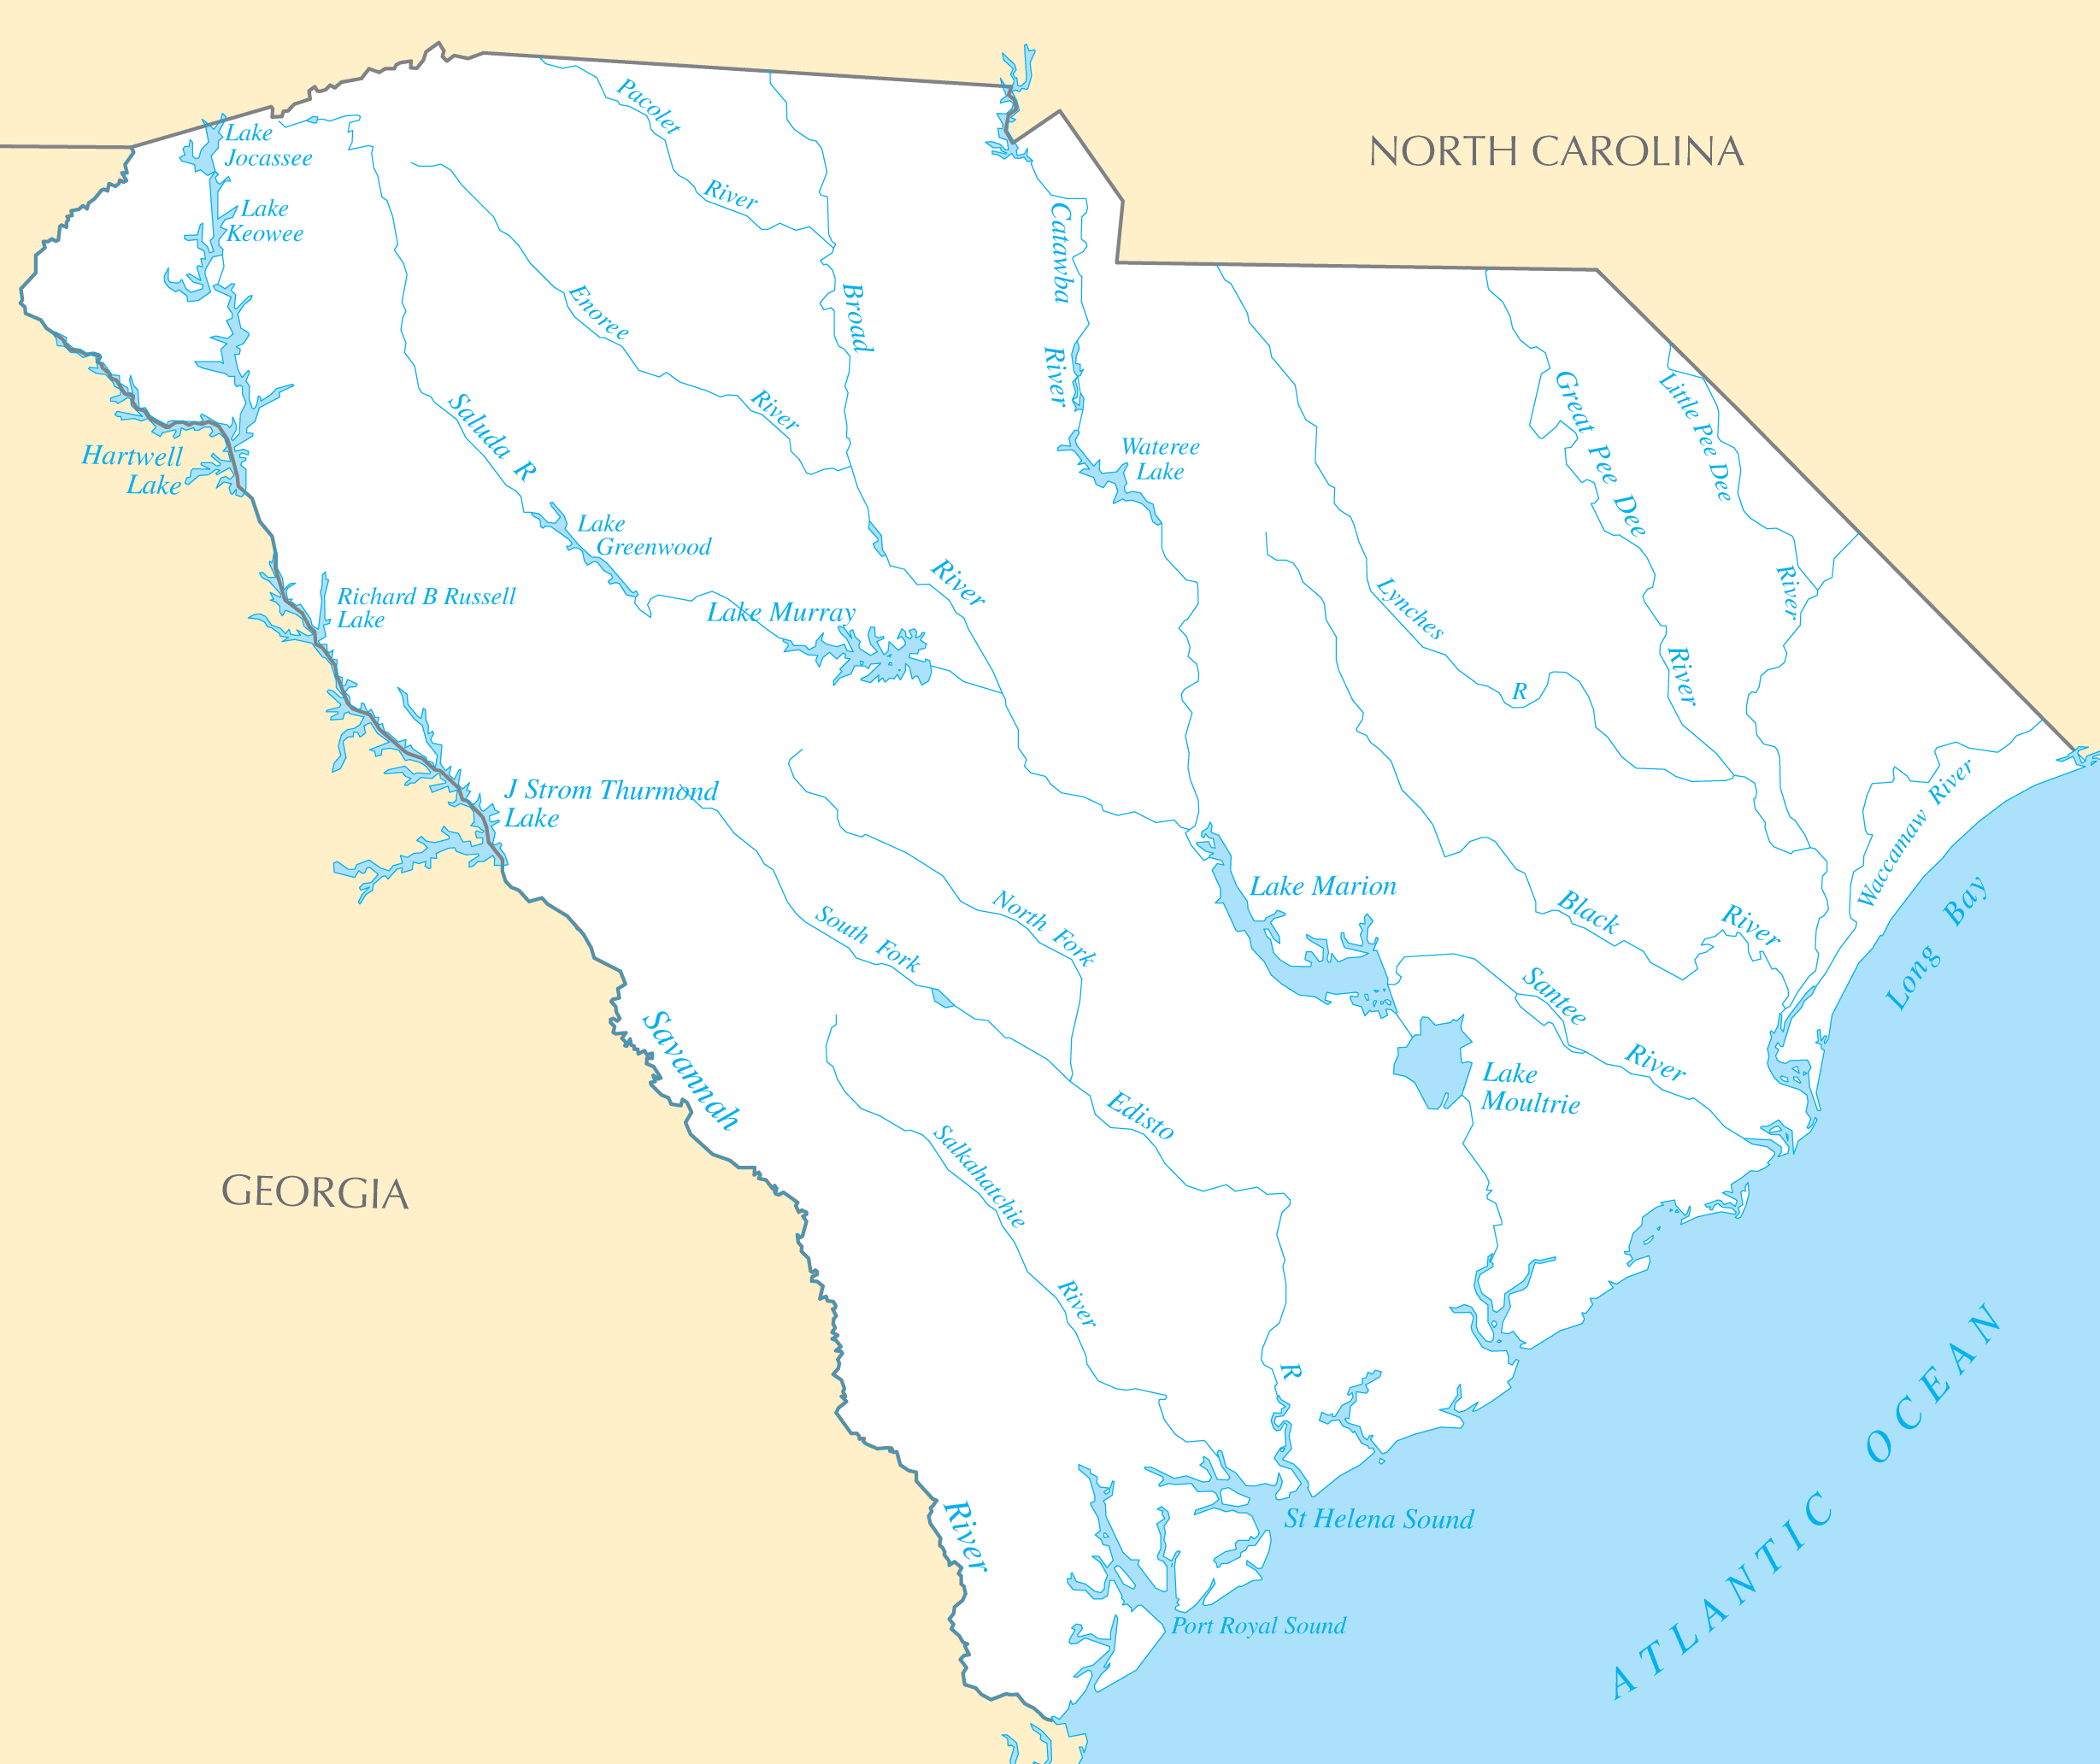 South Carolina Rivers And Lakes